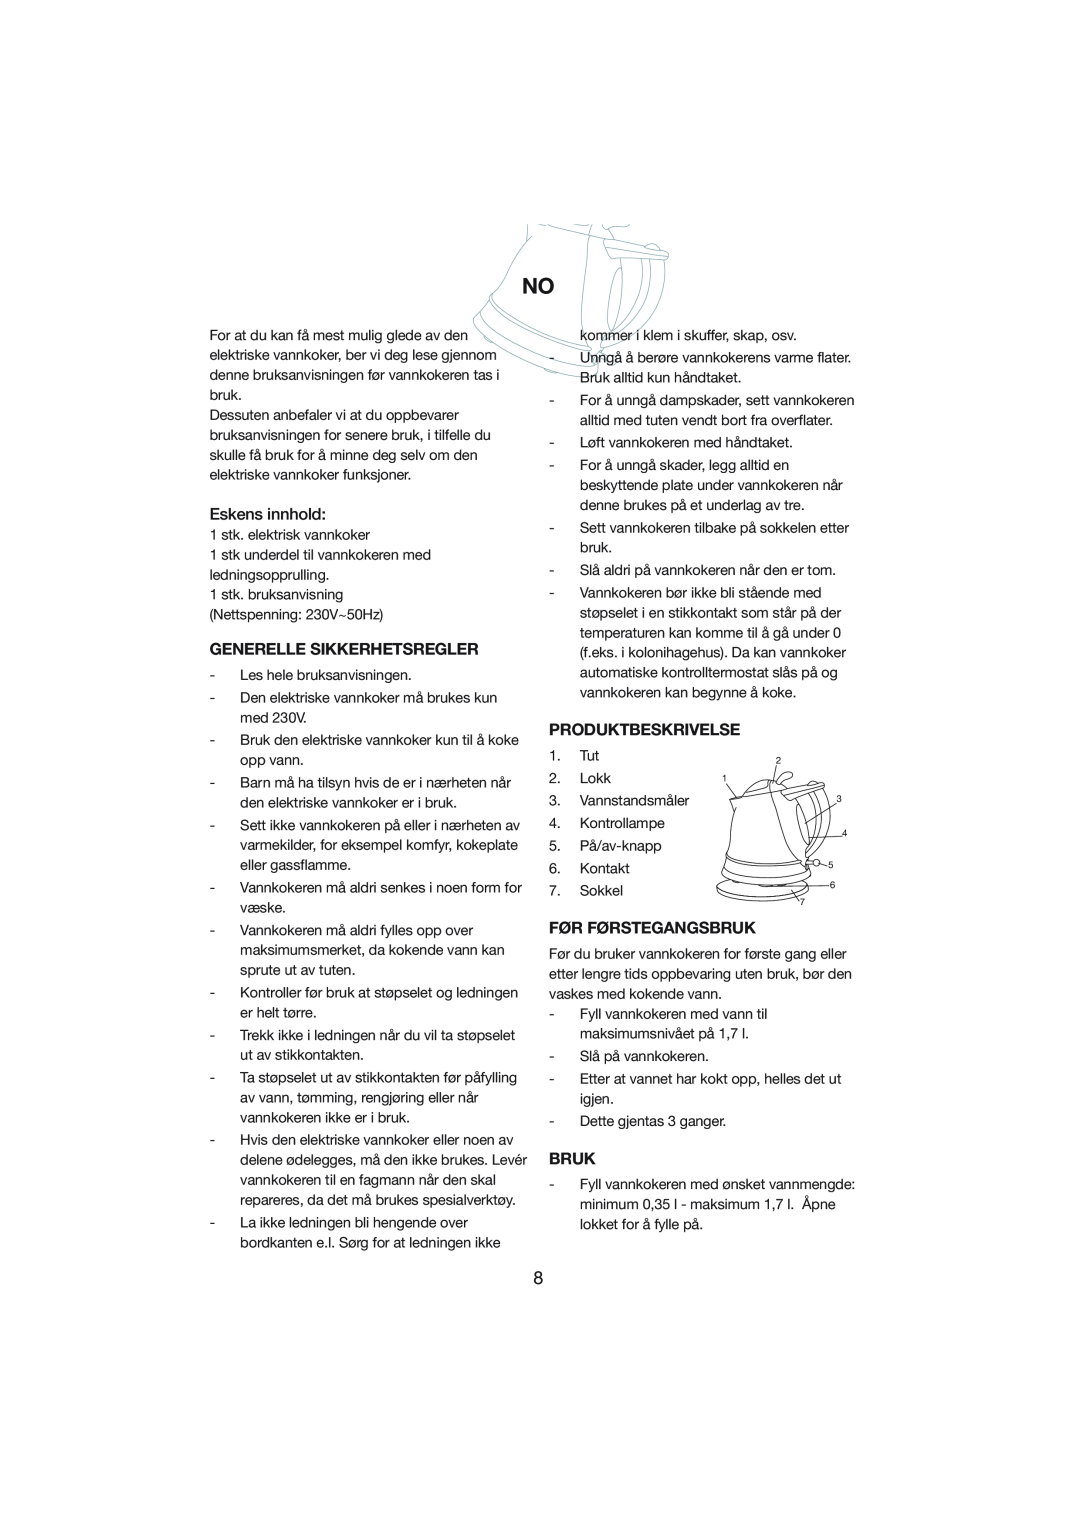 Melissa 245-014 manual Eskens innhold, Generelle Sikkerhetsregler, Produktbeskrivelse, Før Førstegangsbruk 